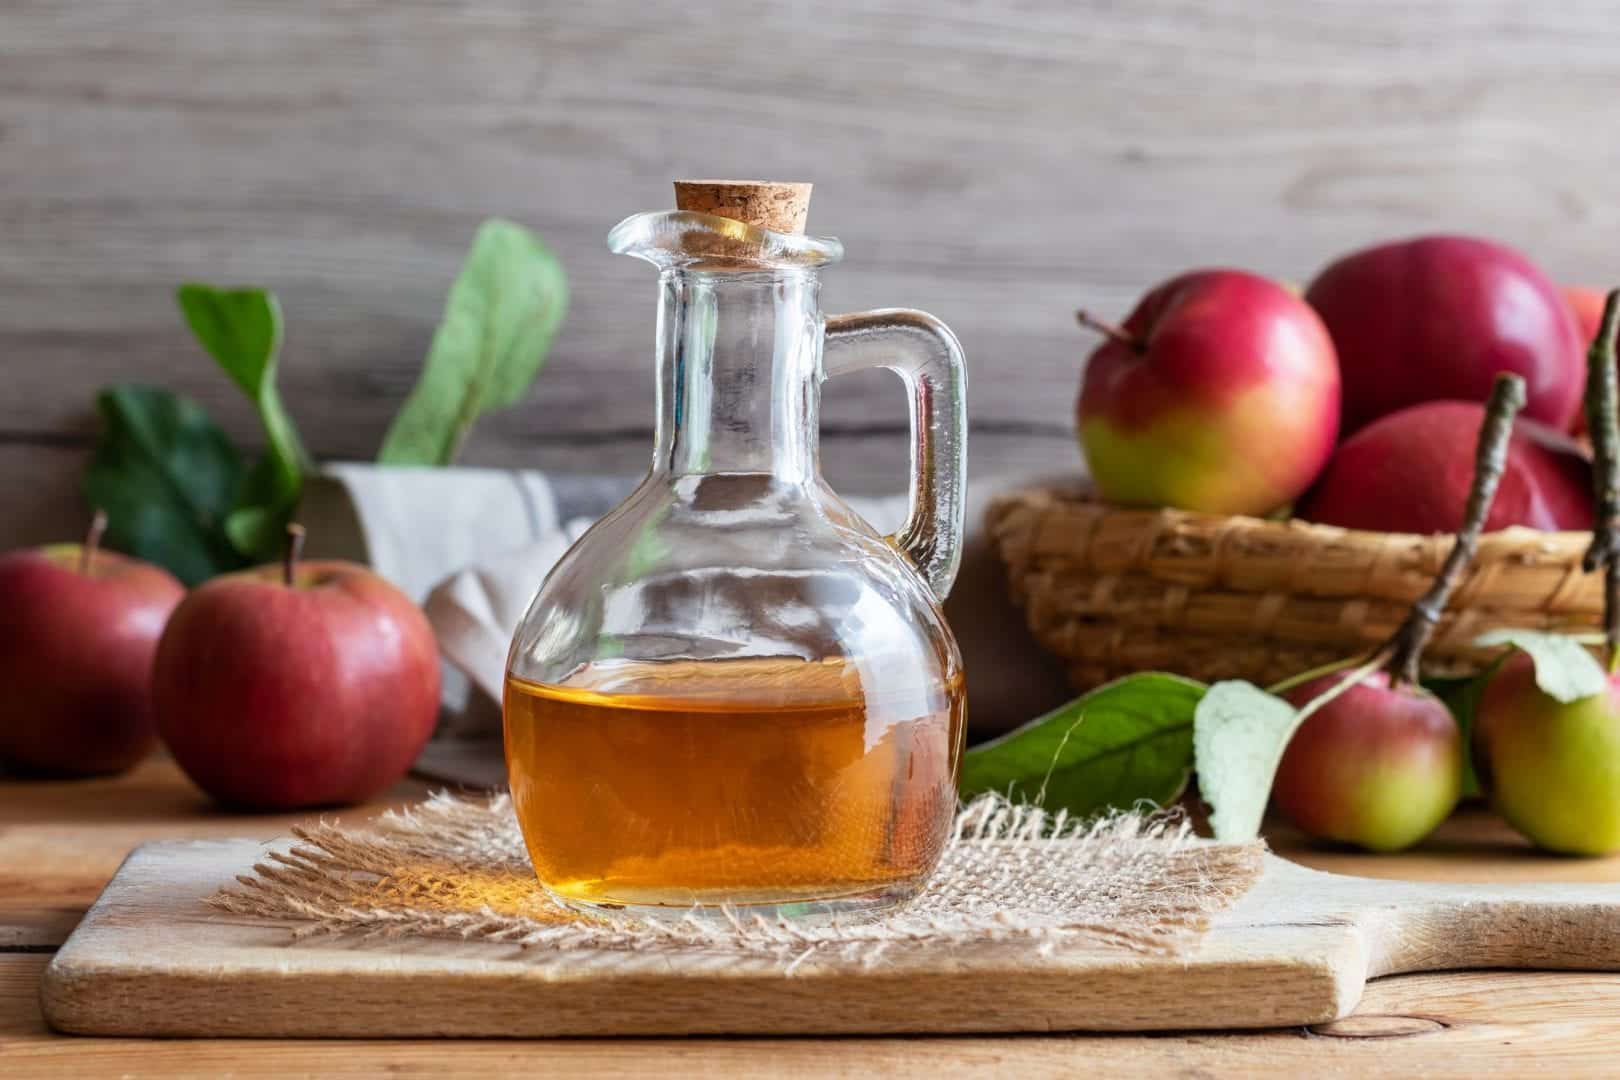 Vinagre de maçã - benefícios, formas de usar e receita caseira